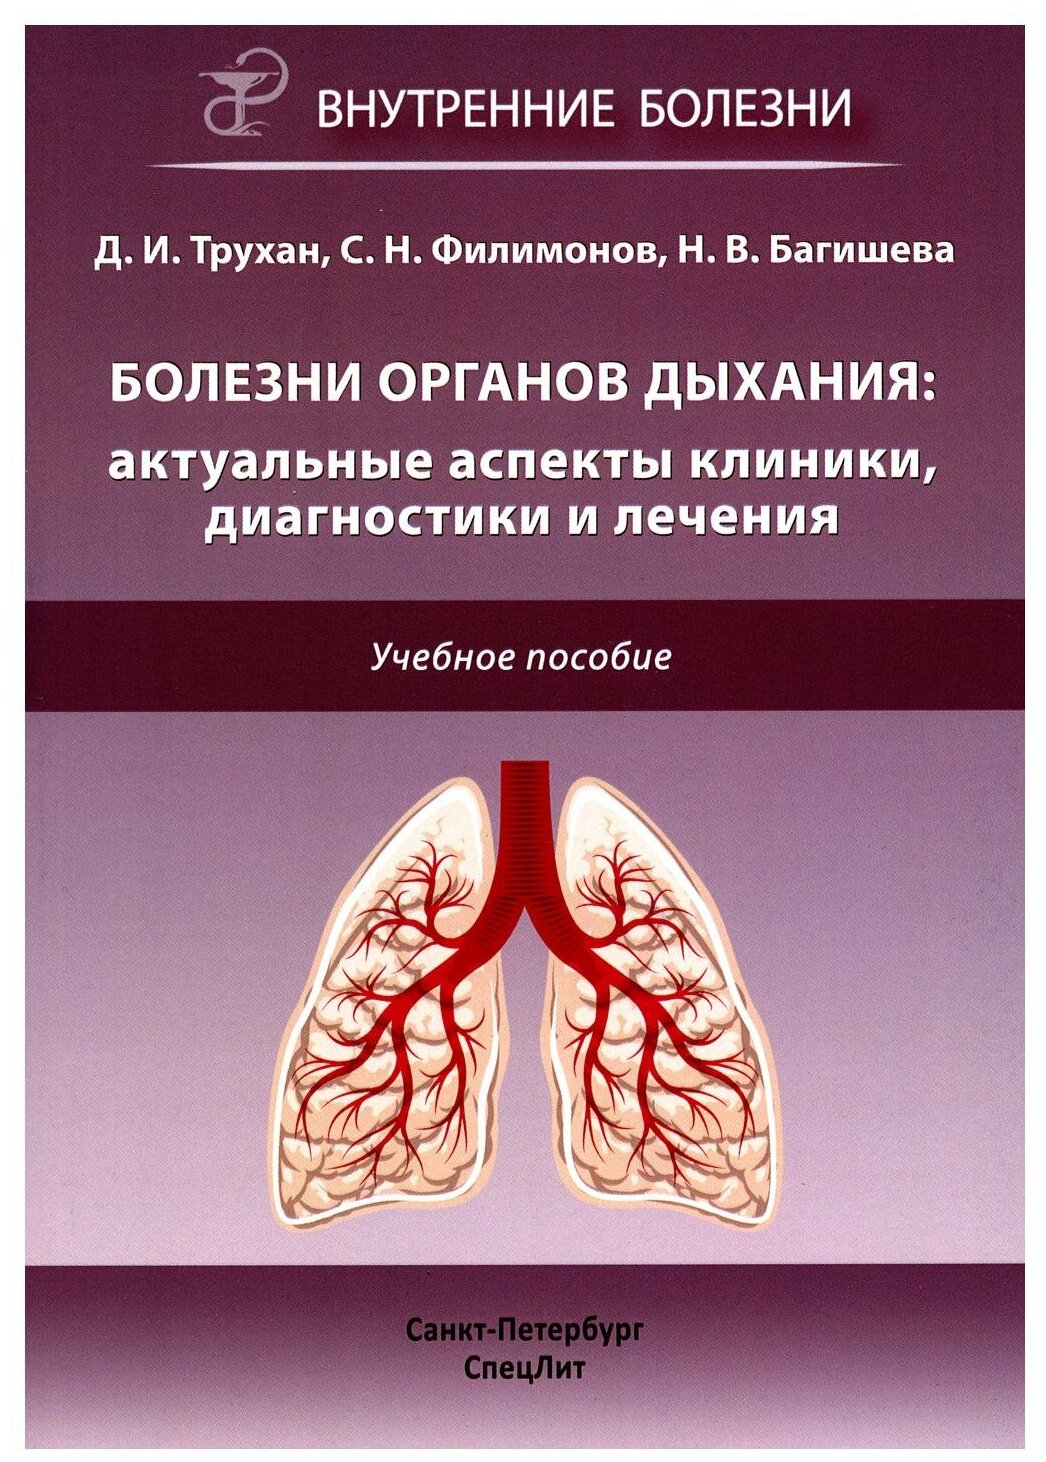 Болезни органов дыхания. Актуальные аспекты диагностики и лечения - фото №1